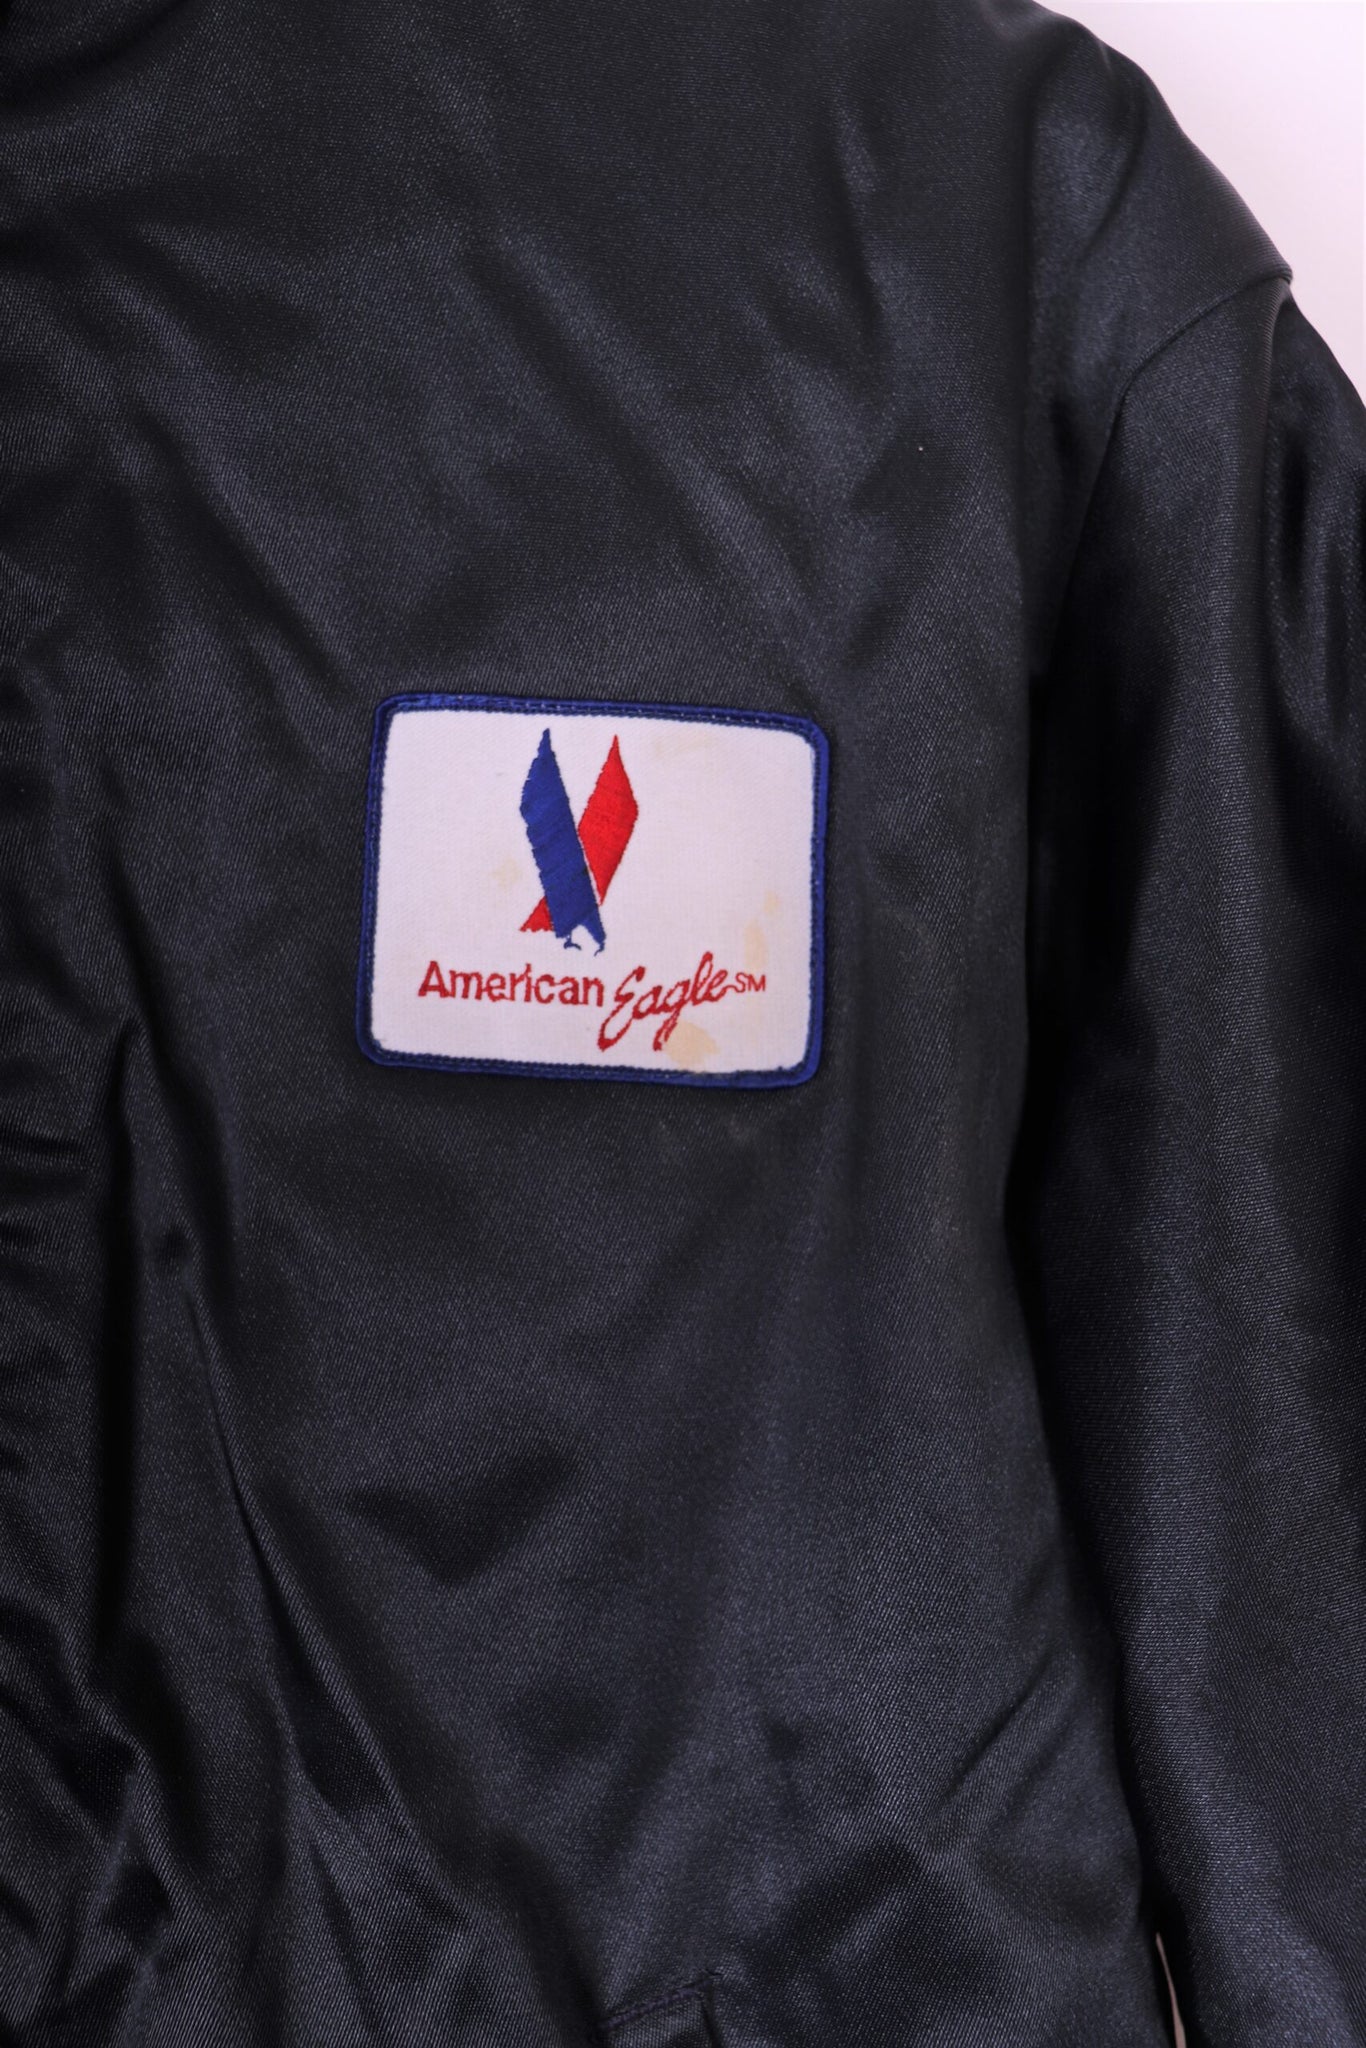 Vintage American Eagle Airline Jacket